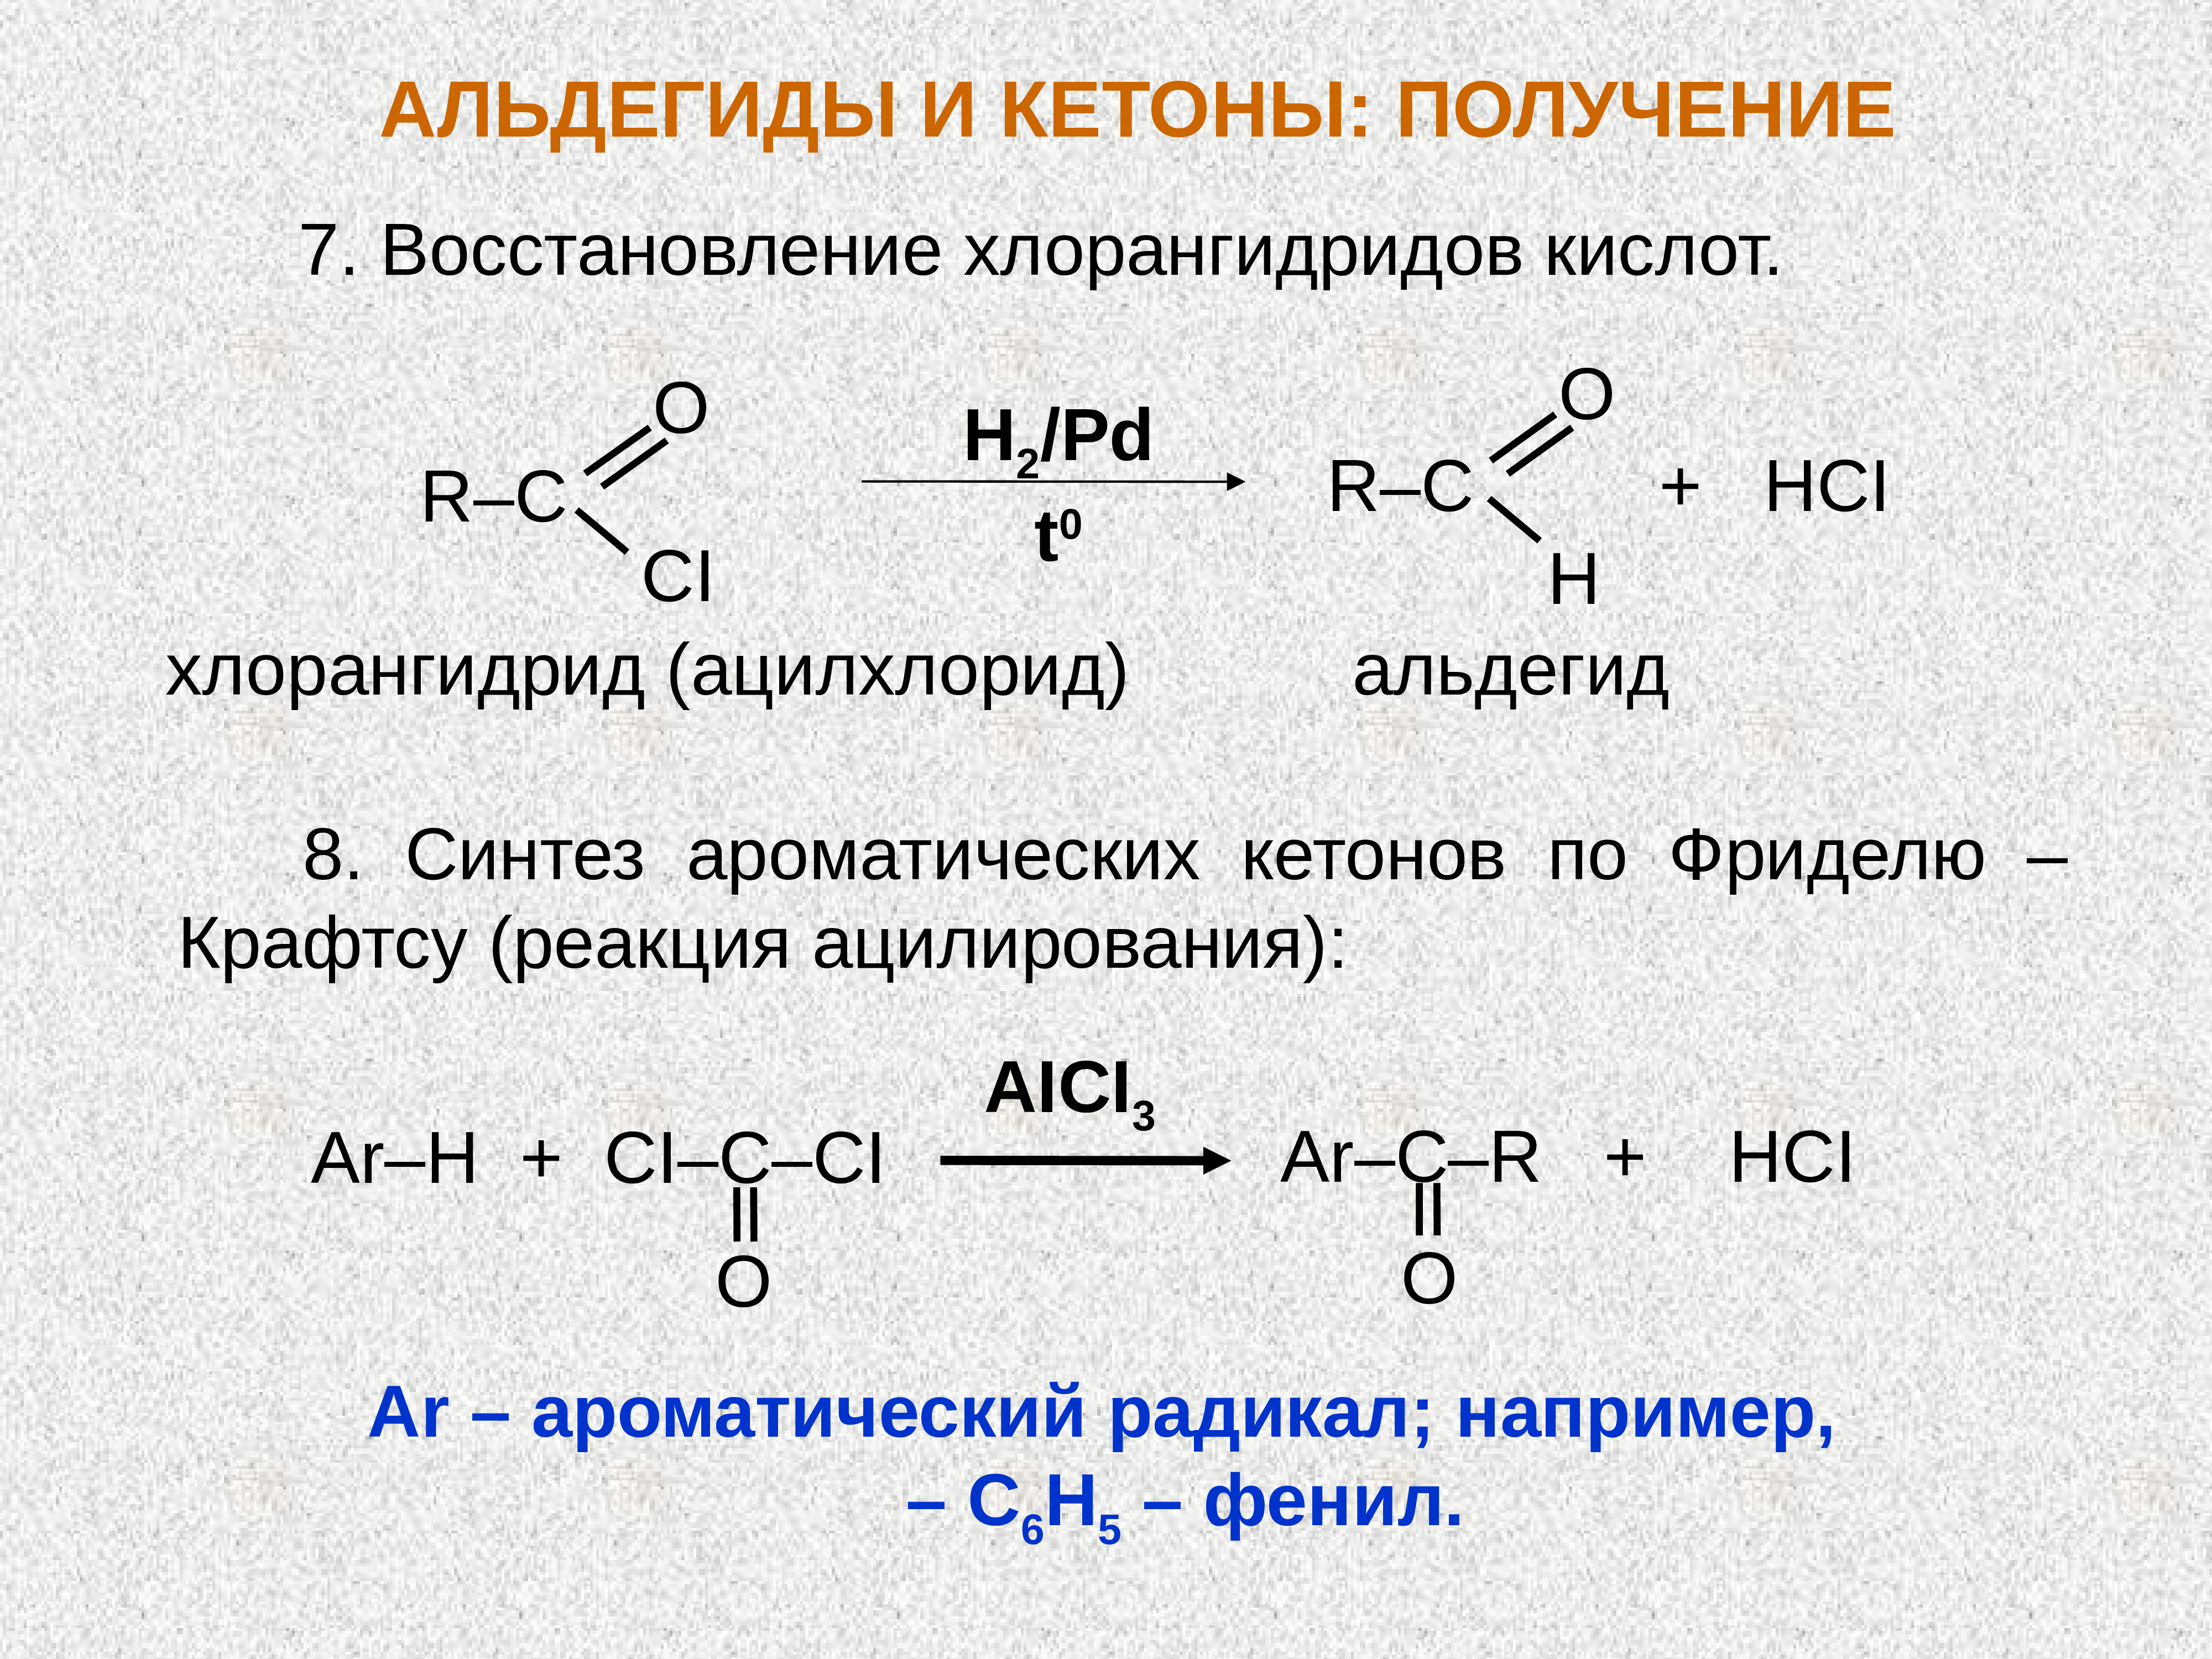 Кислоты восстанавливаются до. Восстановление хлорангидридов карбоновых кислот. Хлорангидрид уксусной кислоты с альдегидом. Восстановление хлорангидрида карбоновой кислоты. Синтез альдегидов и кетонов.